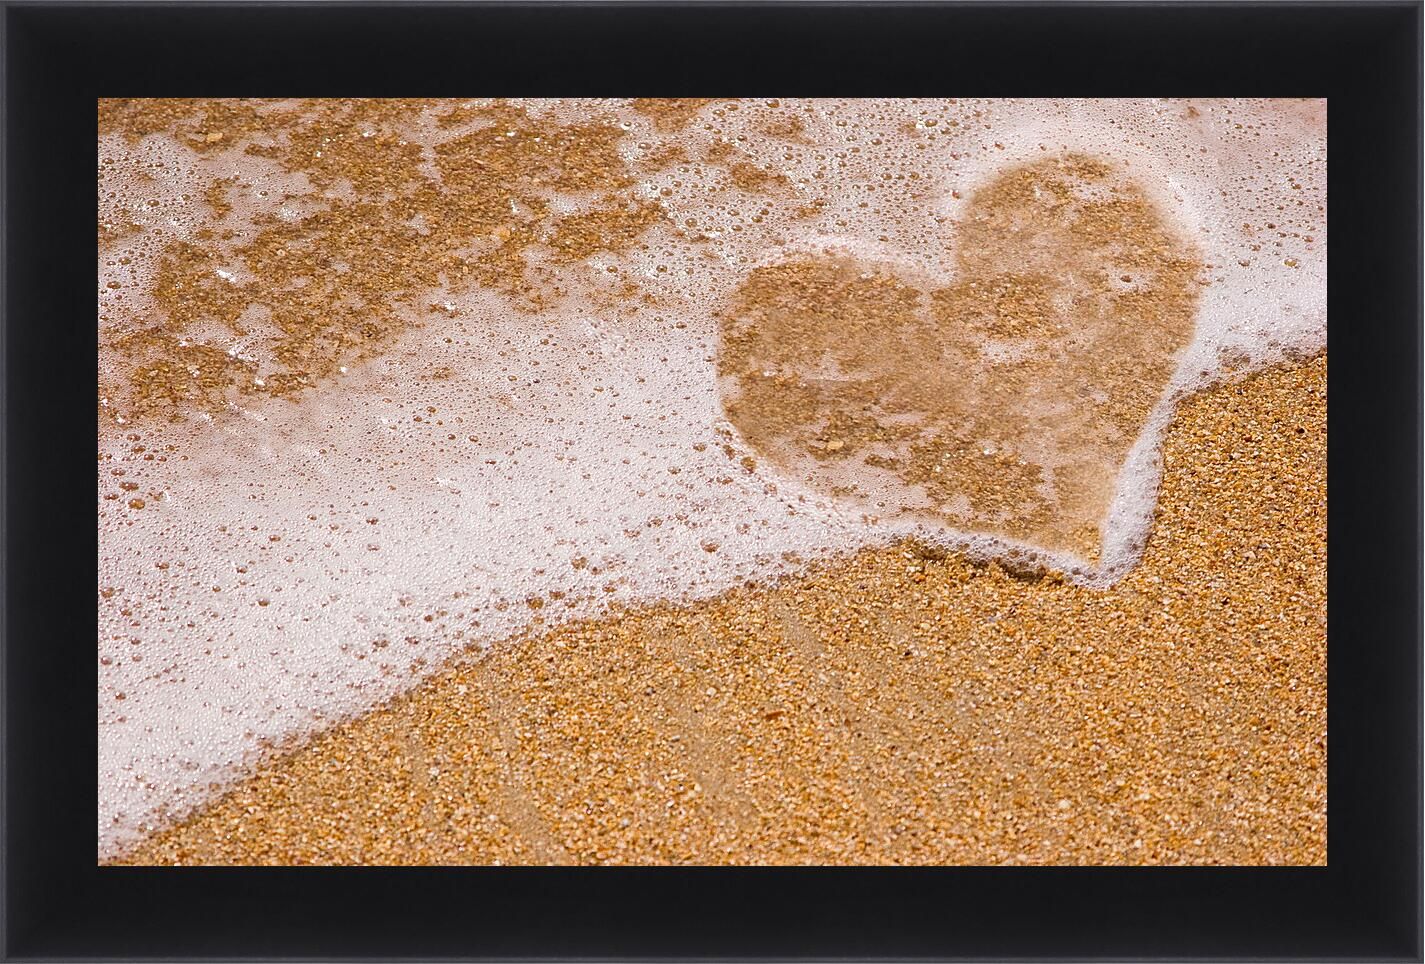 С перебитыми сердцами и жизненным. Блеск песка. Цитаты стук сердец влюбленных. Бутылка в виде сердца с песком.